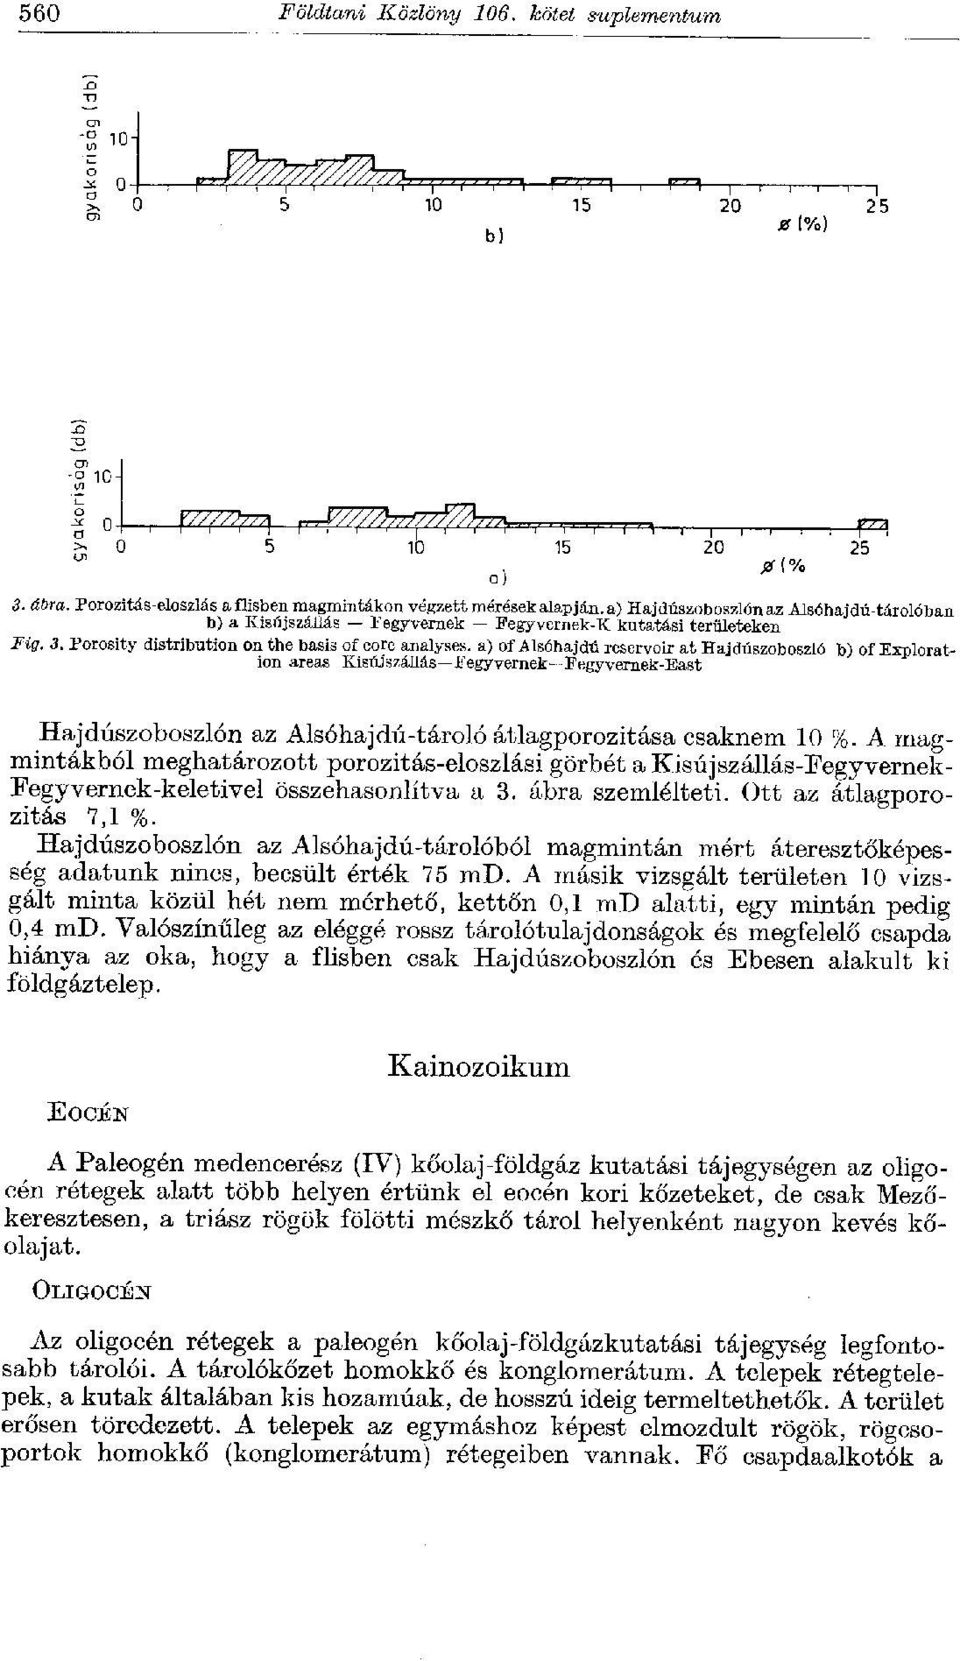 Porosity distribution on the basis of core analyses, a) of Alsóhajdú reservoir at Hajdúszoboszló b) of Exploration areas Kisújszállás Fegyvernek Fegyvernek-East Hajdúszoboszlón az Alsóhajdú-tároló